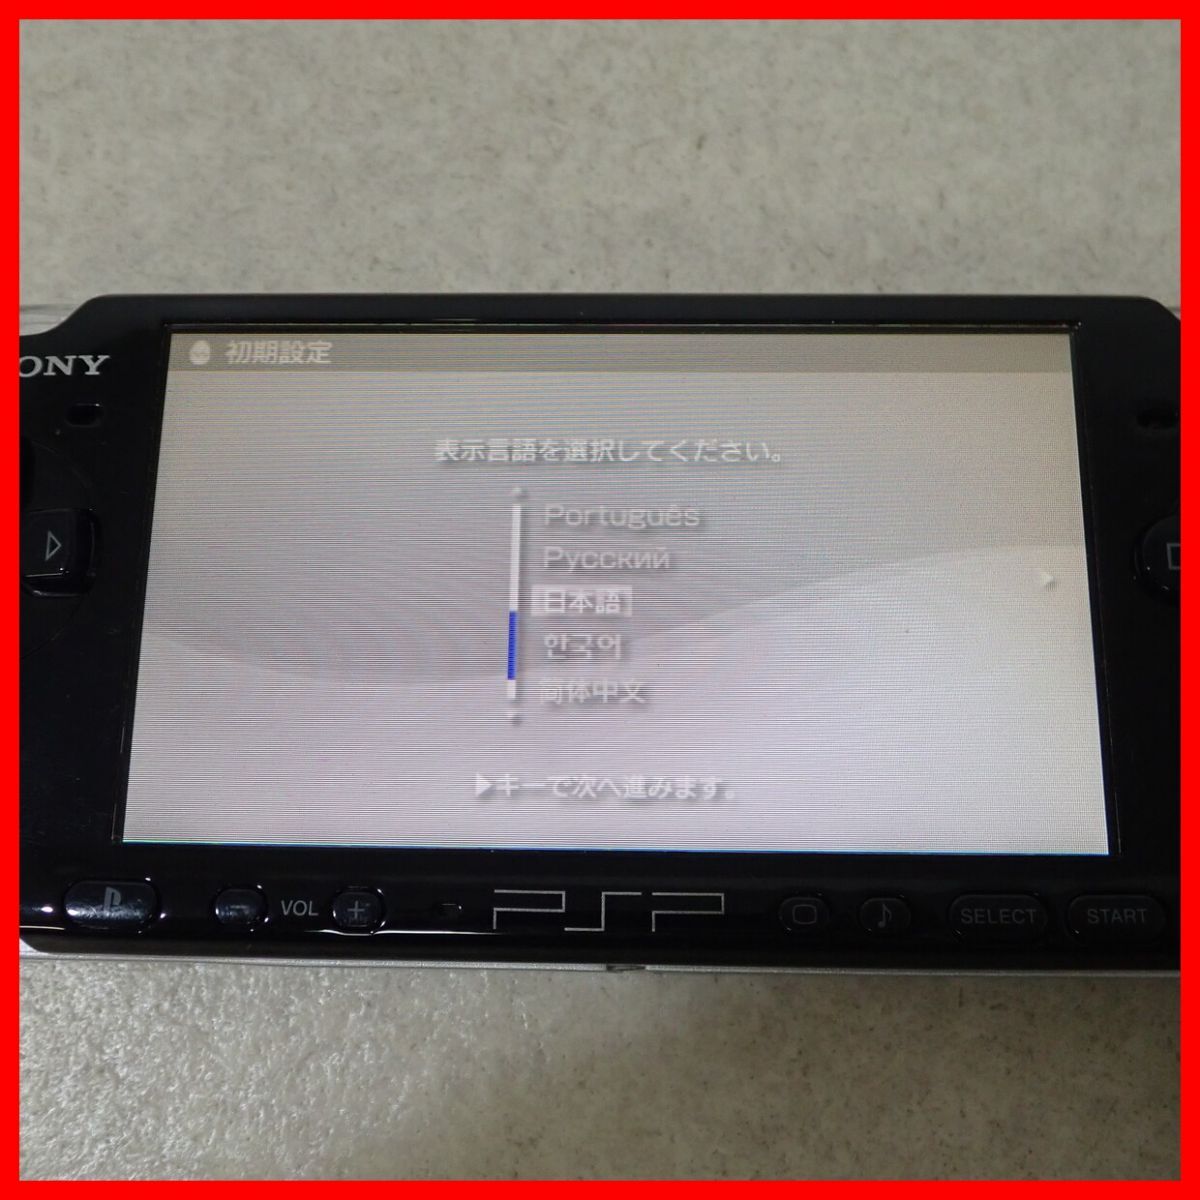  рабочий товар PSP PlayStation портативный корпус PSP-3000 фортепьяно черный VALUE PACK SONY Sony коробка мнение есть [10